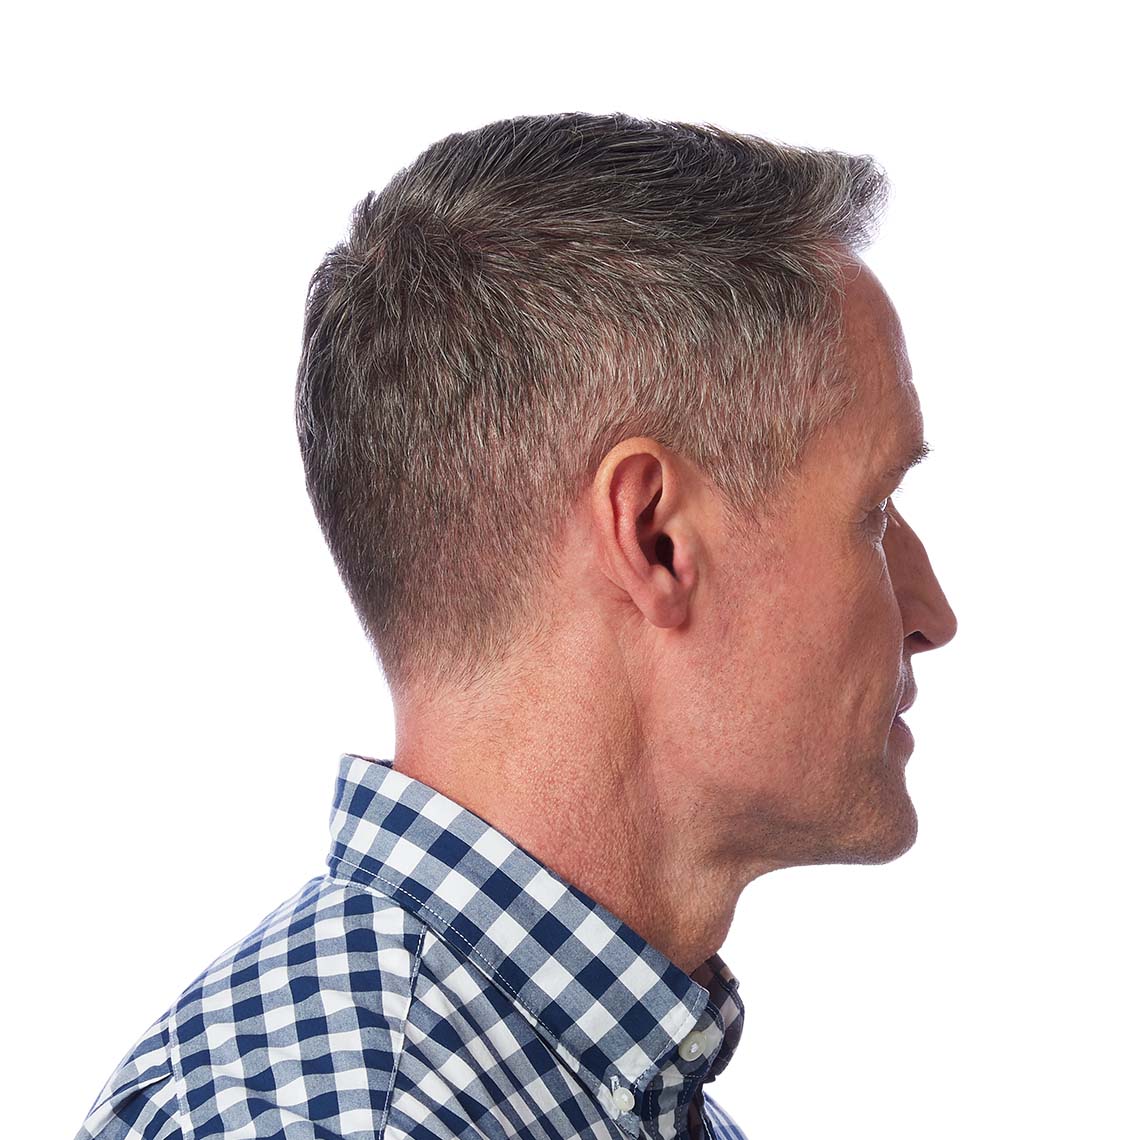 An IIC hearing aid shown in a man's ear